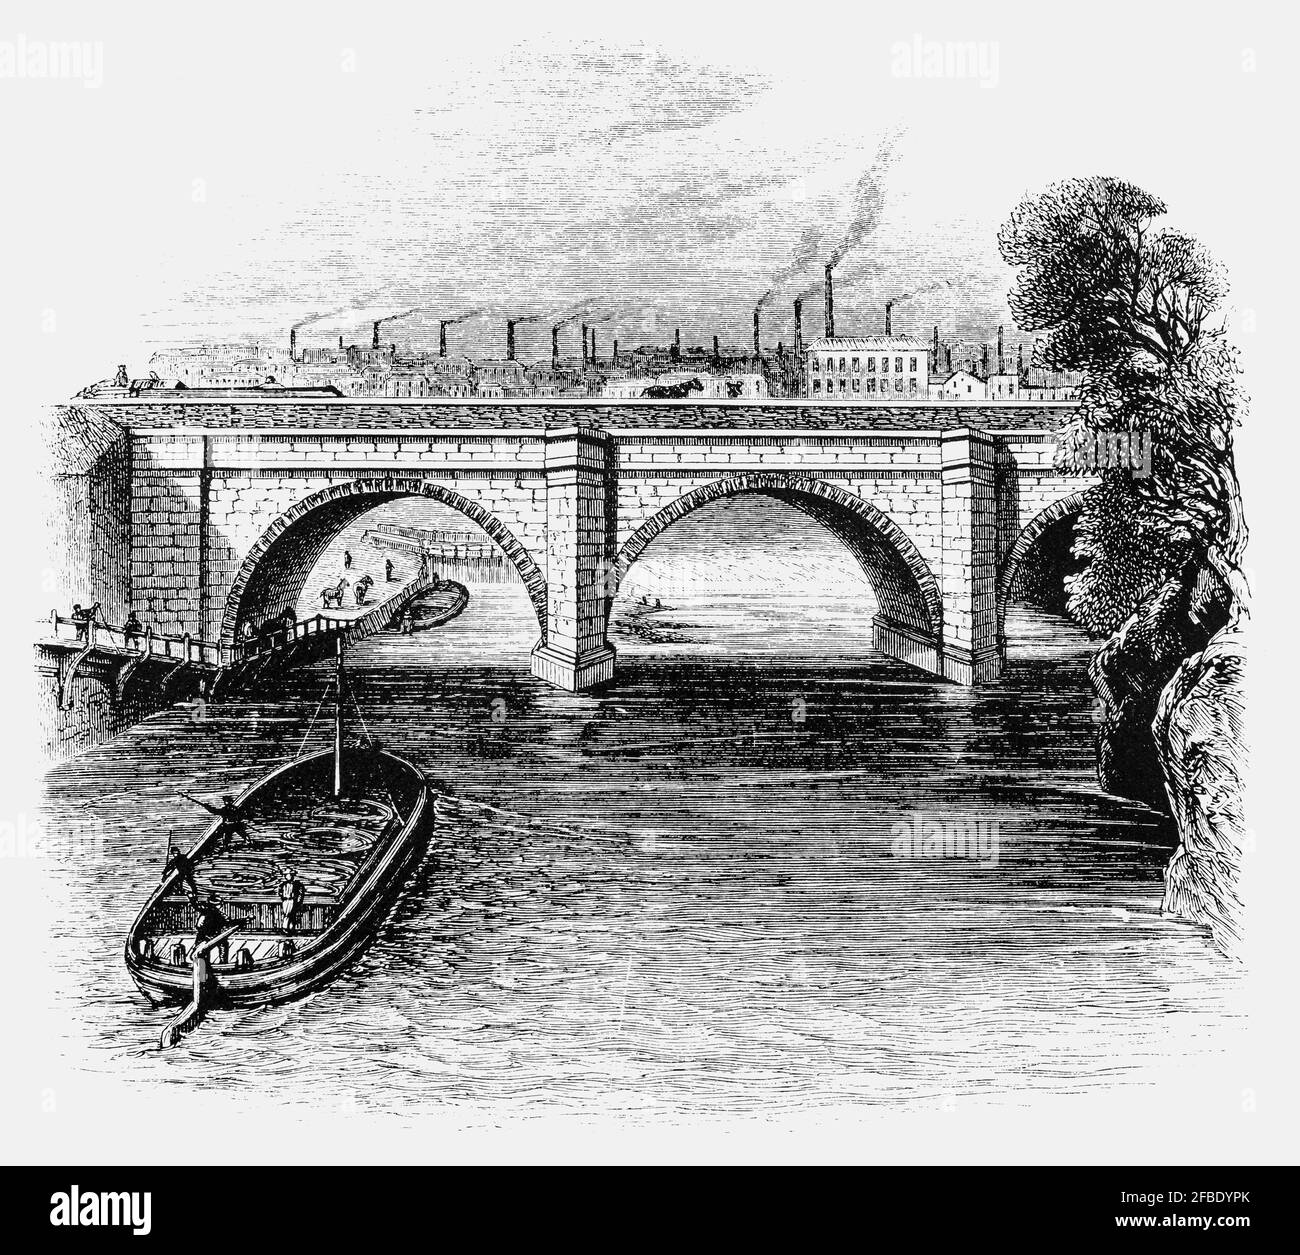 L'aqueduc de Barton, ouvert le 17 juillet 1761, transporta le canal Bridgewater au-dessus de la rivière Irwell à Barton-upon-Irwell, dans le Lancashire, en Angleterre. Conçu en grande partie par James Brindley sous la direction de John Gilbert, il a été le premier aqueduc navigable à être construit en Angleterre, et est considéré comme « l'une des sept merveilles de l'âge du canal ». Banque D'Images